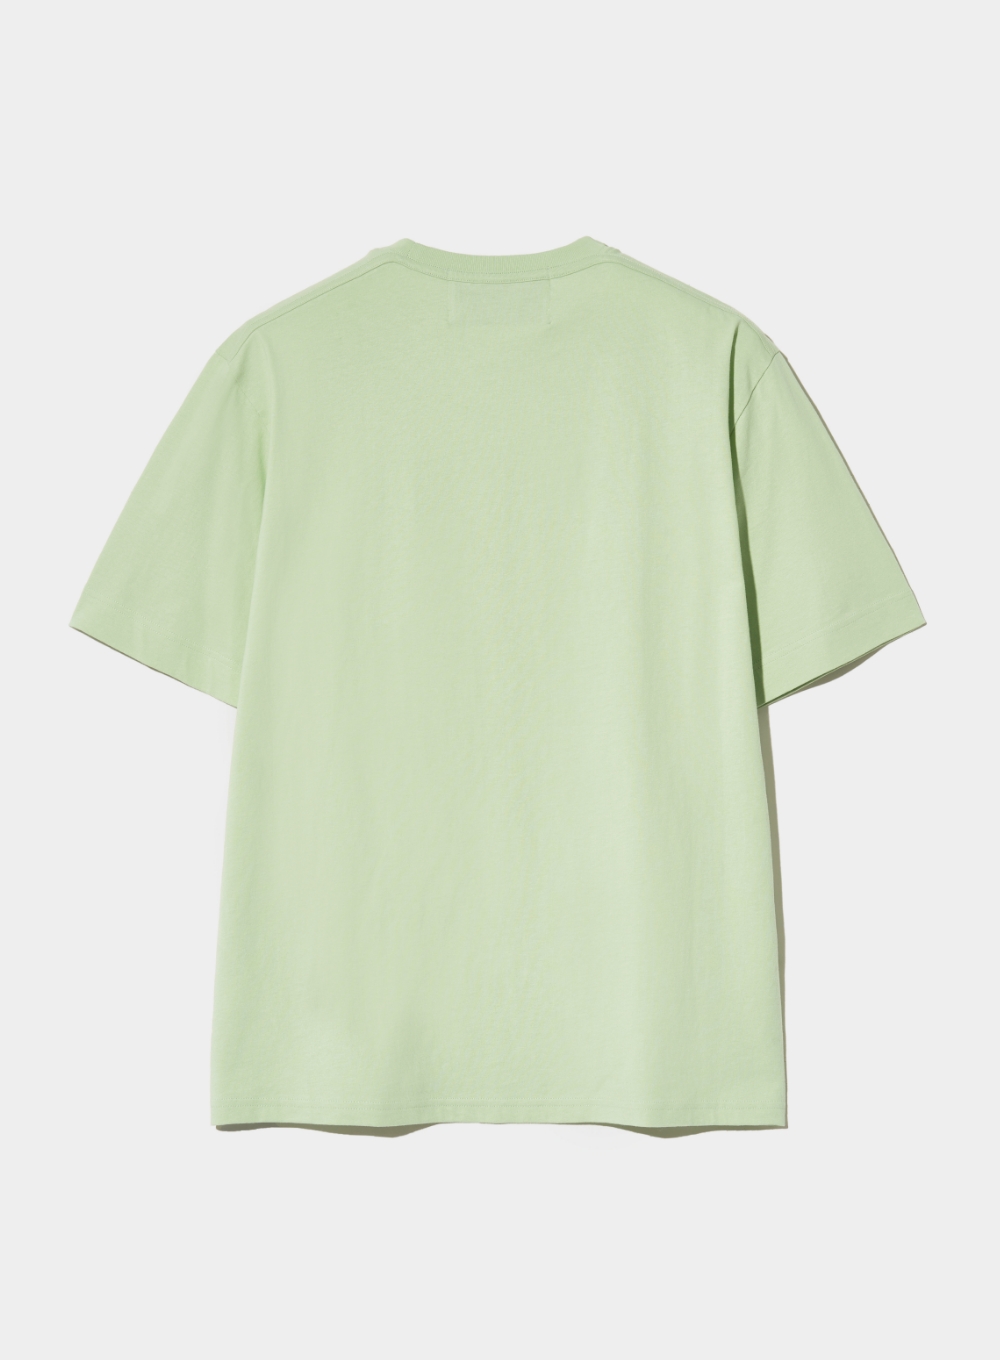 [5월 14일 예약배송] Banana Tree Graphic T-Shirt - Celadon Mint